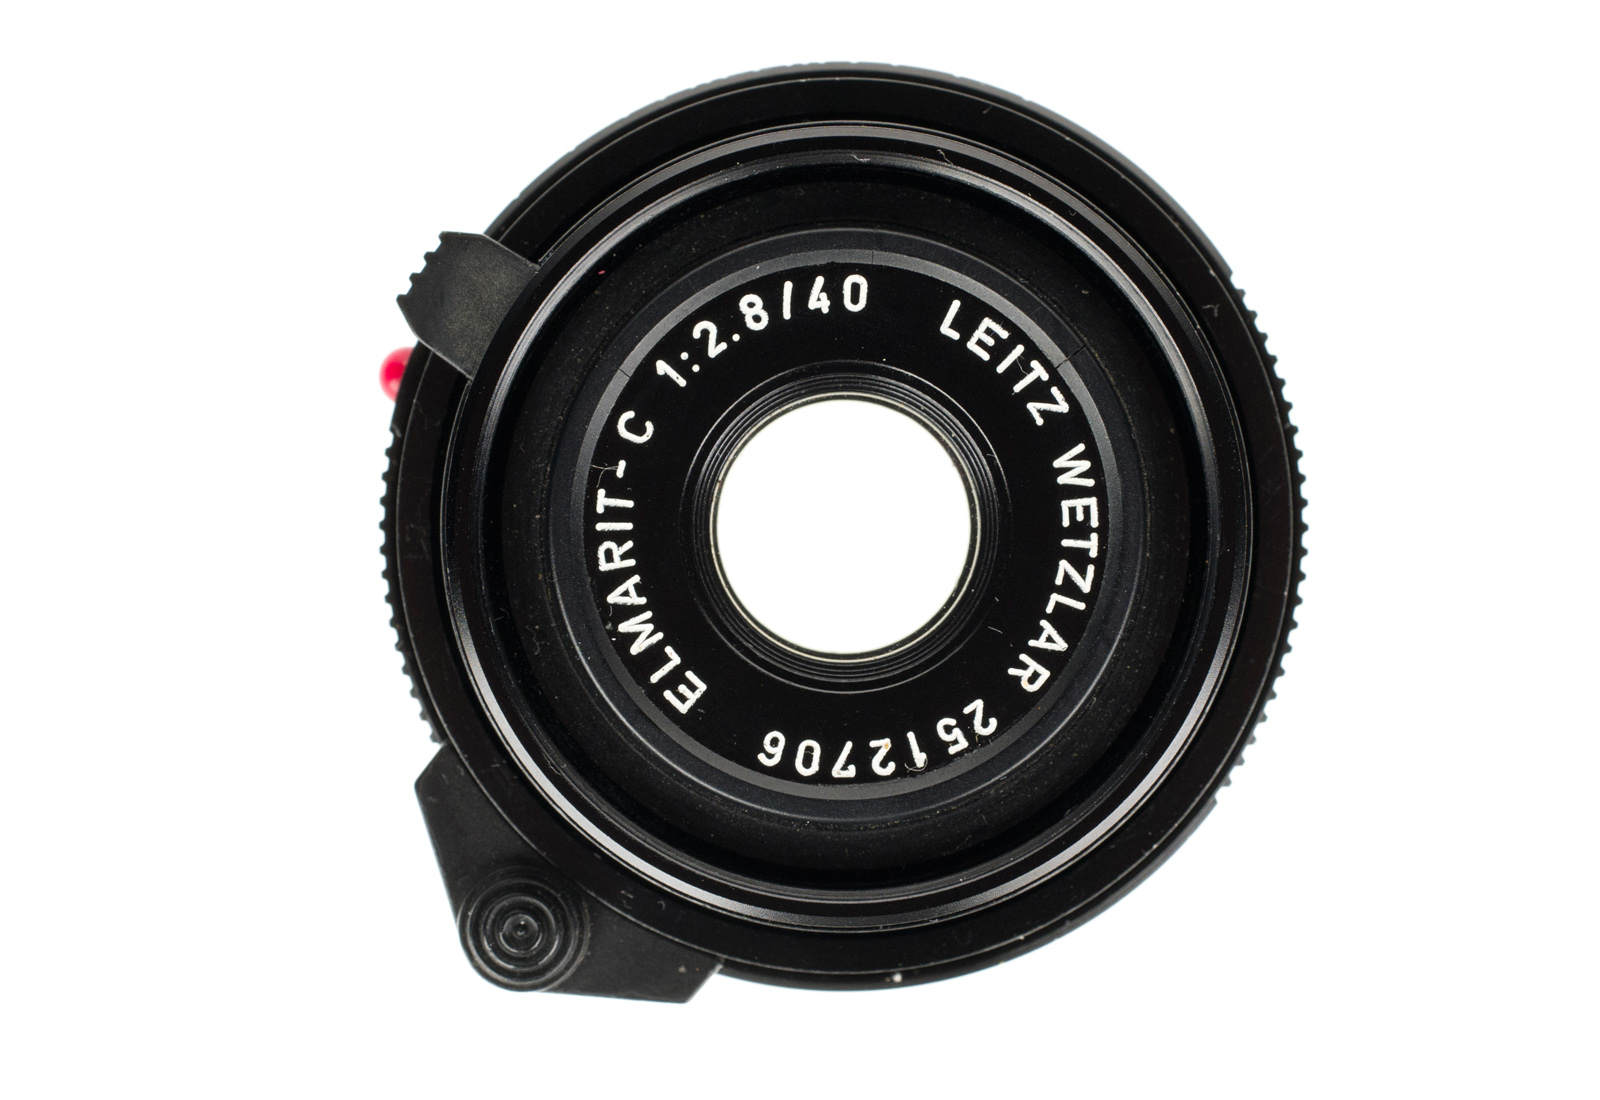 Leica Elmarit-C 1:2,8/40mm, schwarz